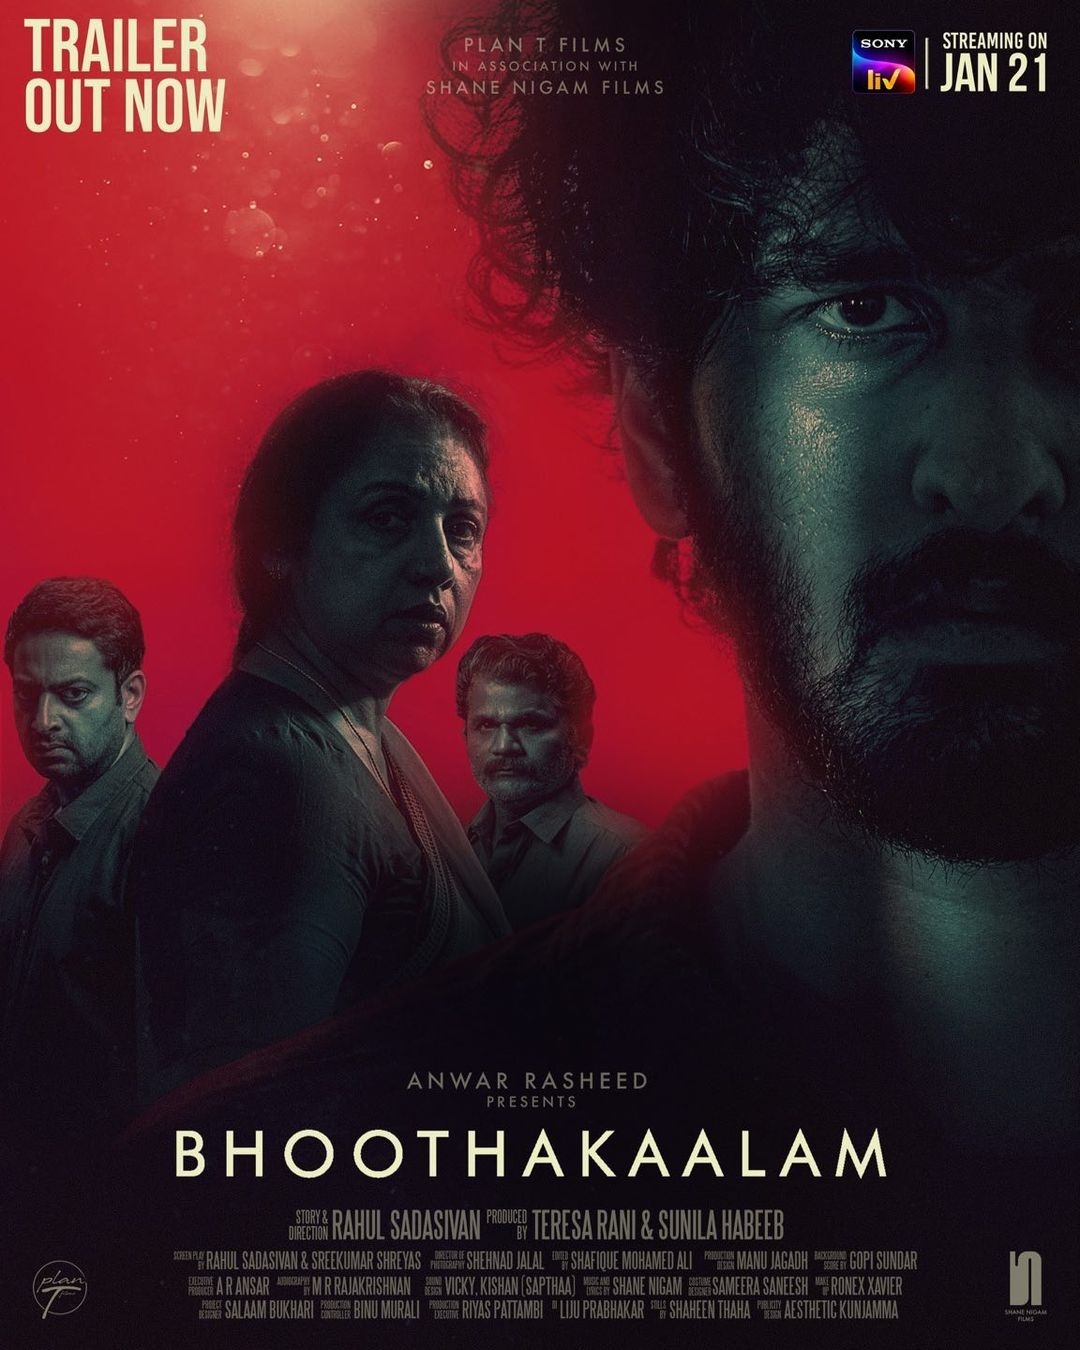 bhoothakalam trailer